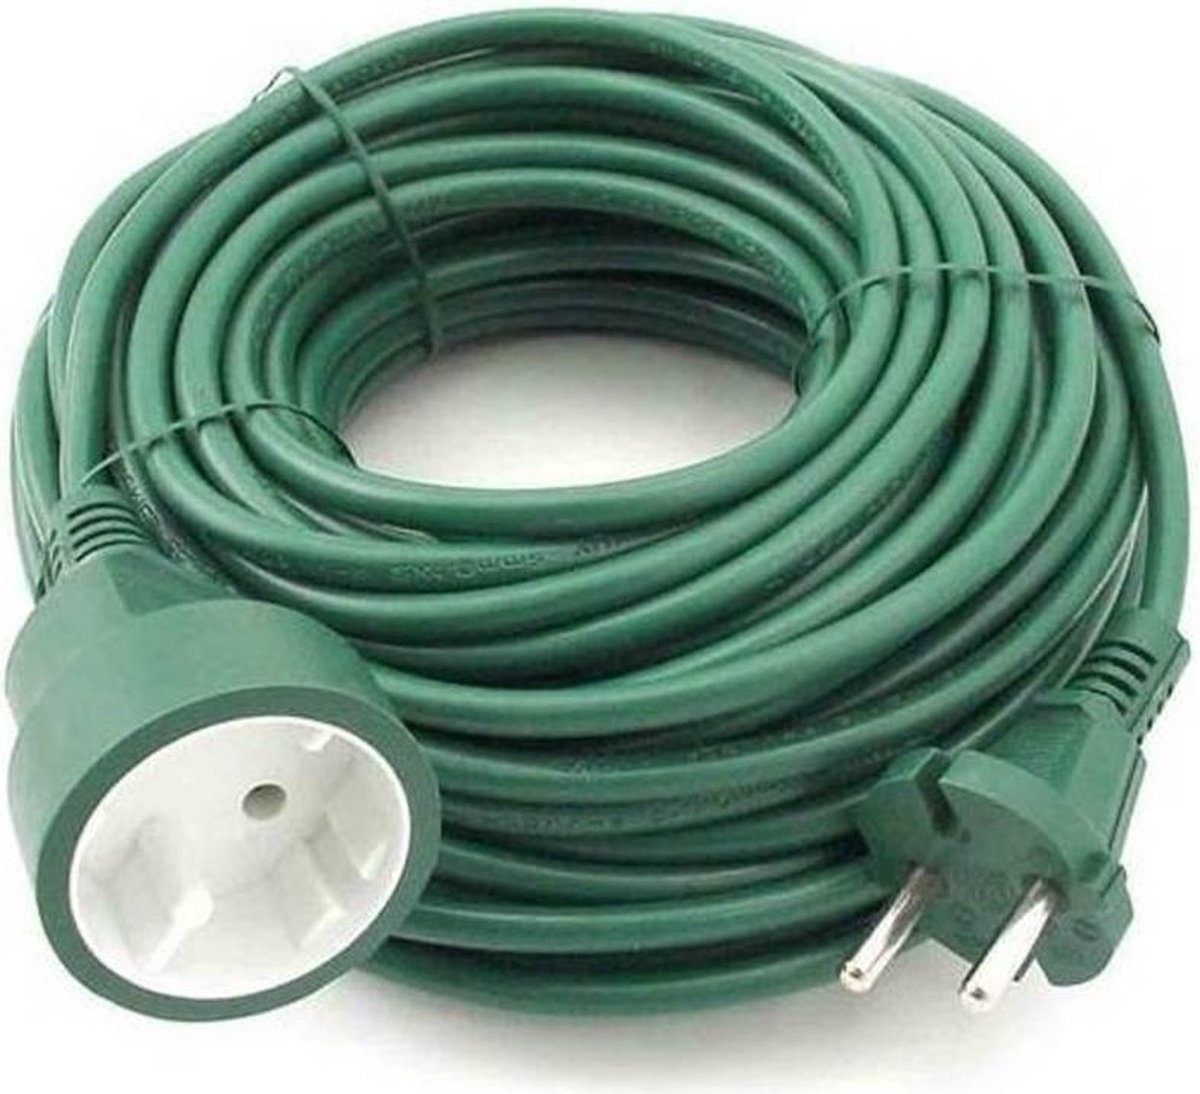 Verlengsnoer /kabel groen 20 meter binnen/buiten - dubbel geisoleerd en  niet geaard | bol.com